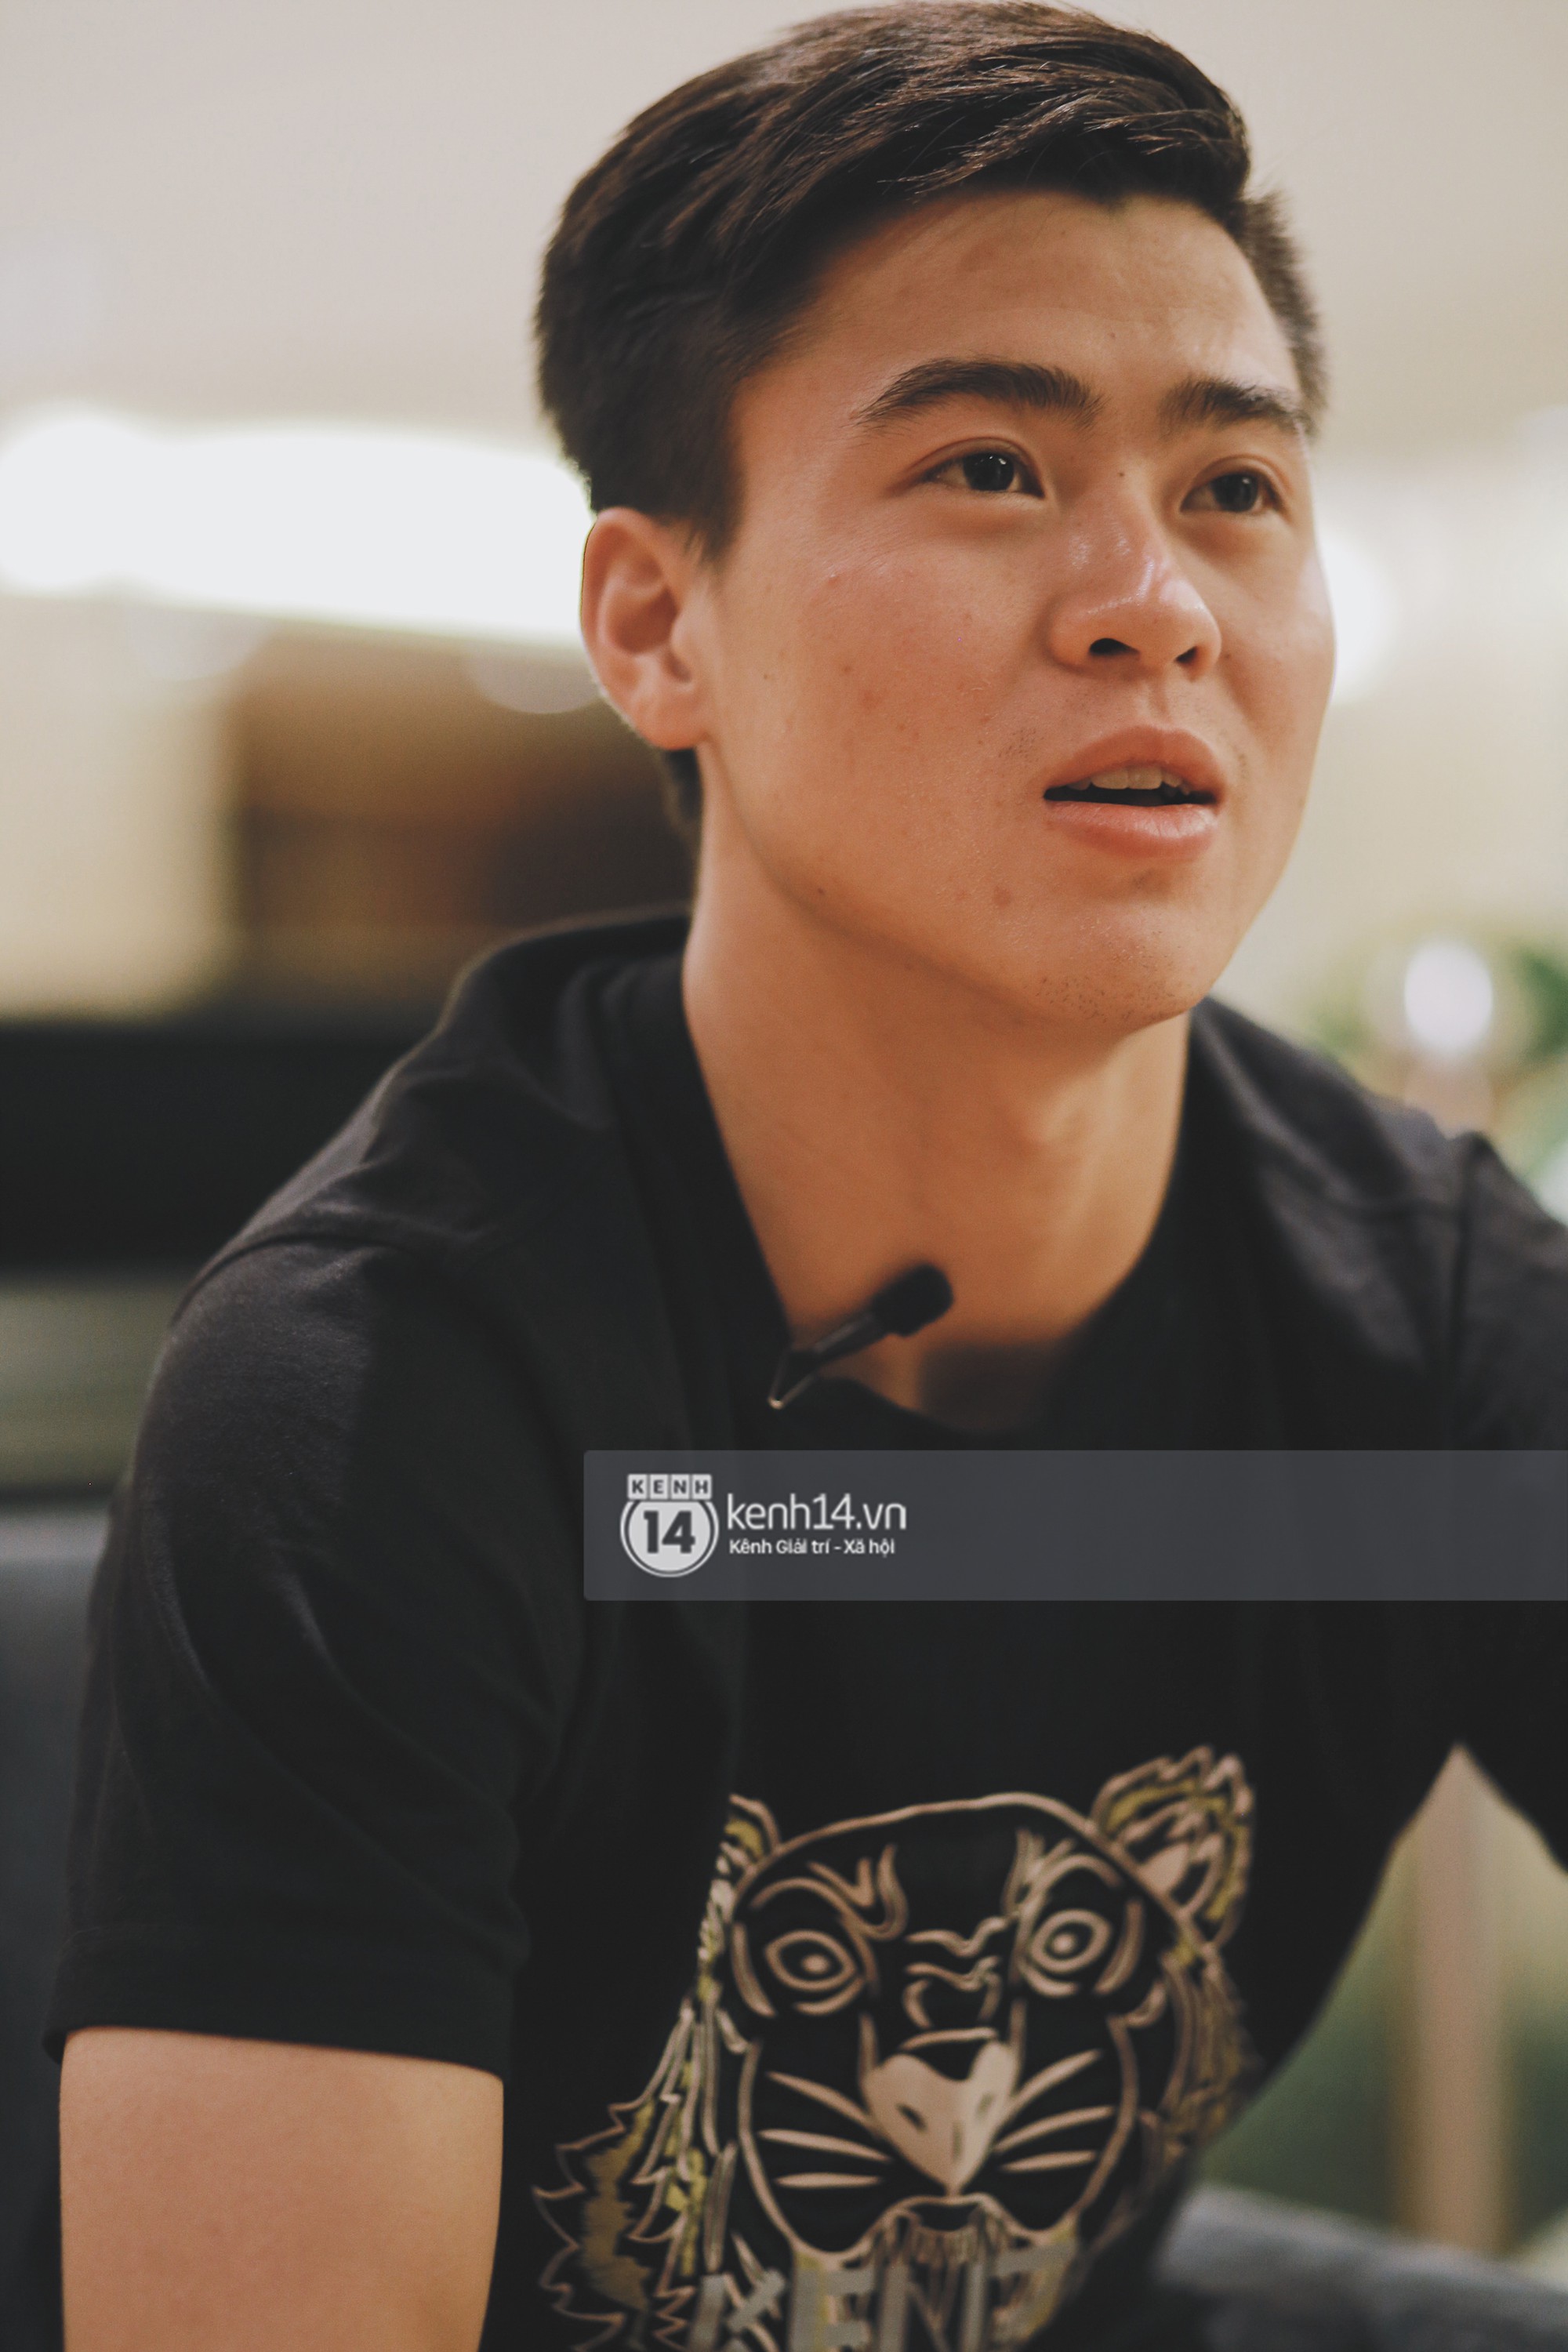 Duy Mạnh U23 Việt Nam: Trong đội chỉ có mình với Hồng Duy bán hàng online, nhưng thật ra là... đăng hộ bạn gái đấy - Ảnh 11.